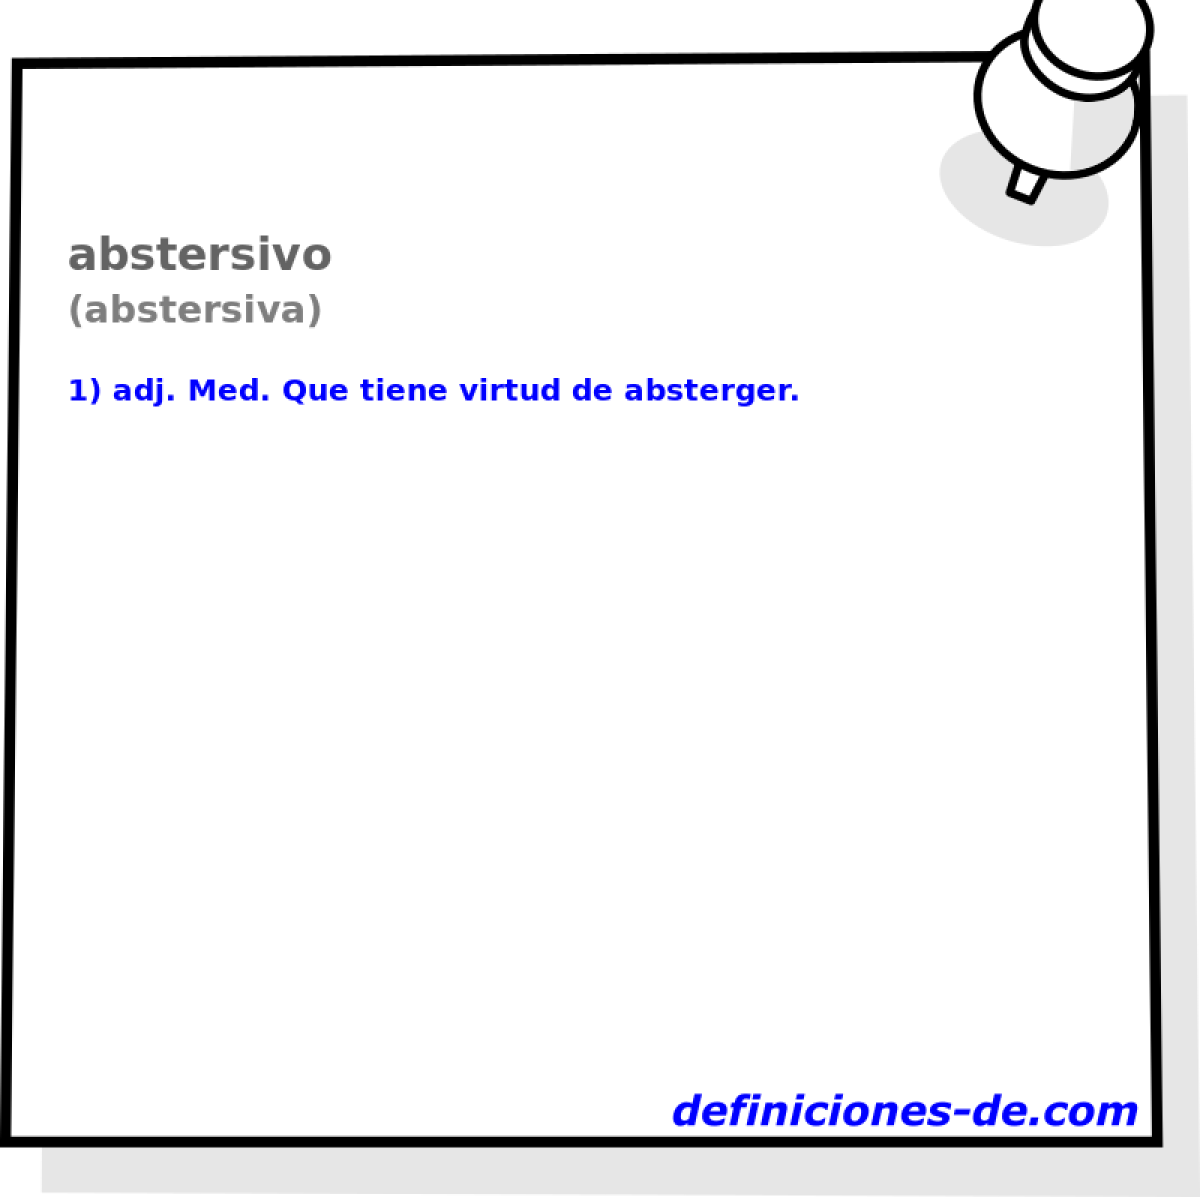 abstersivo (abstersiva)